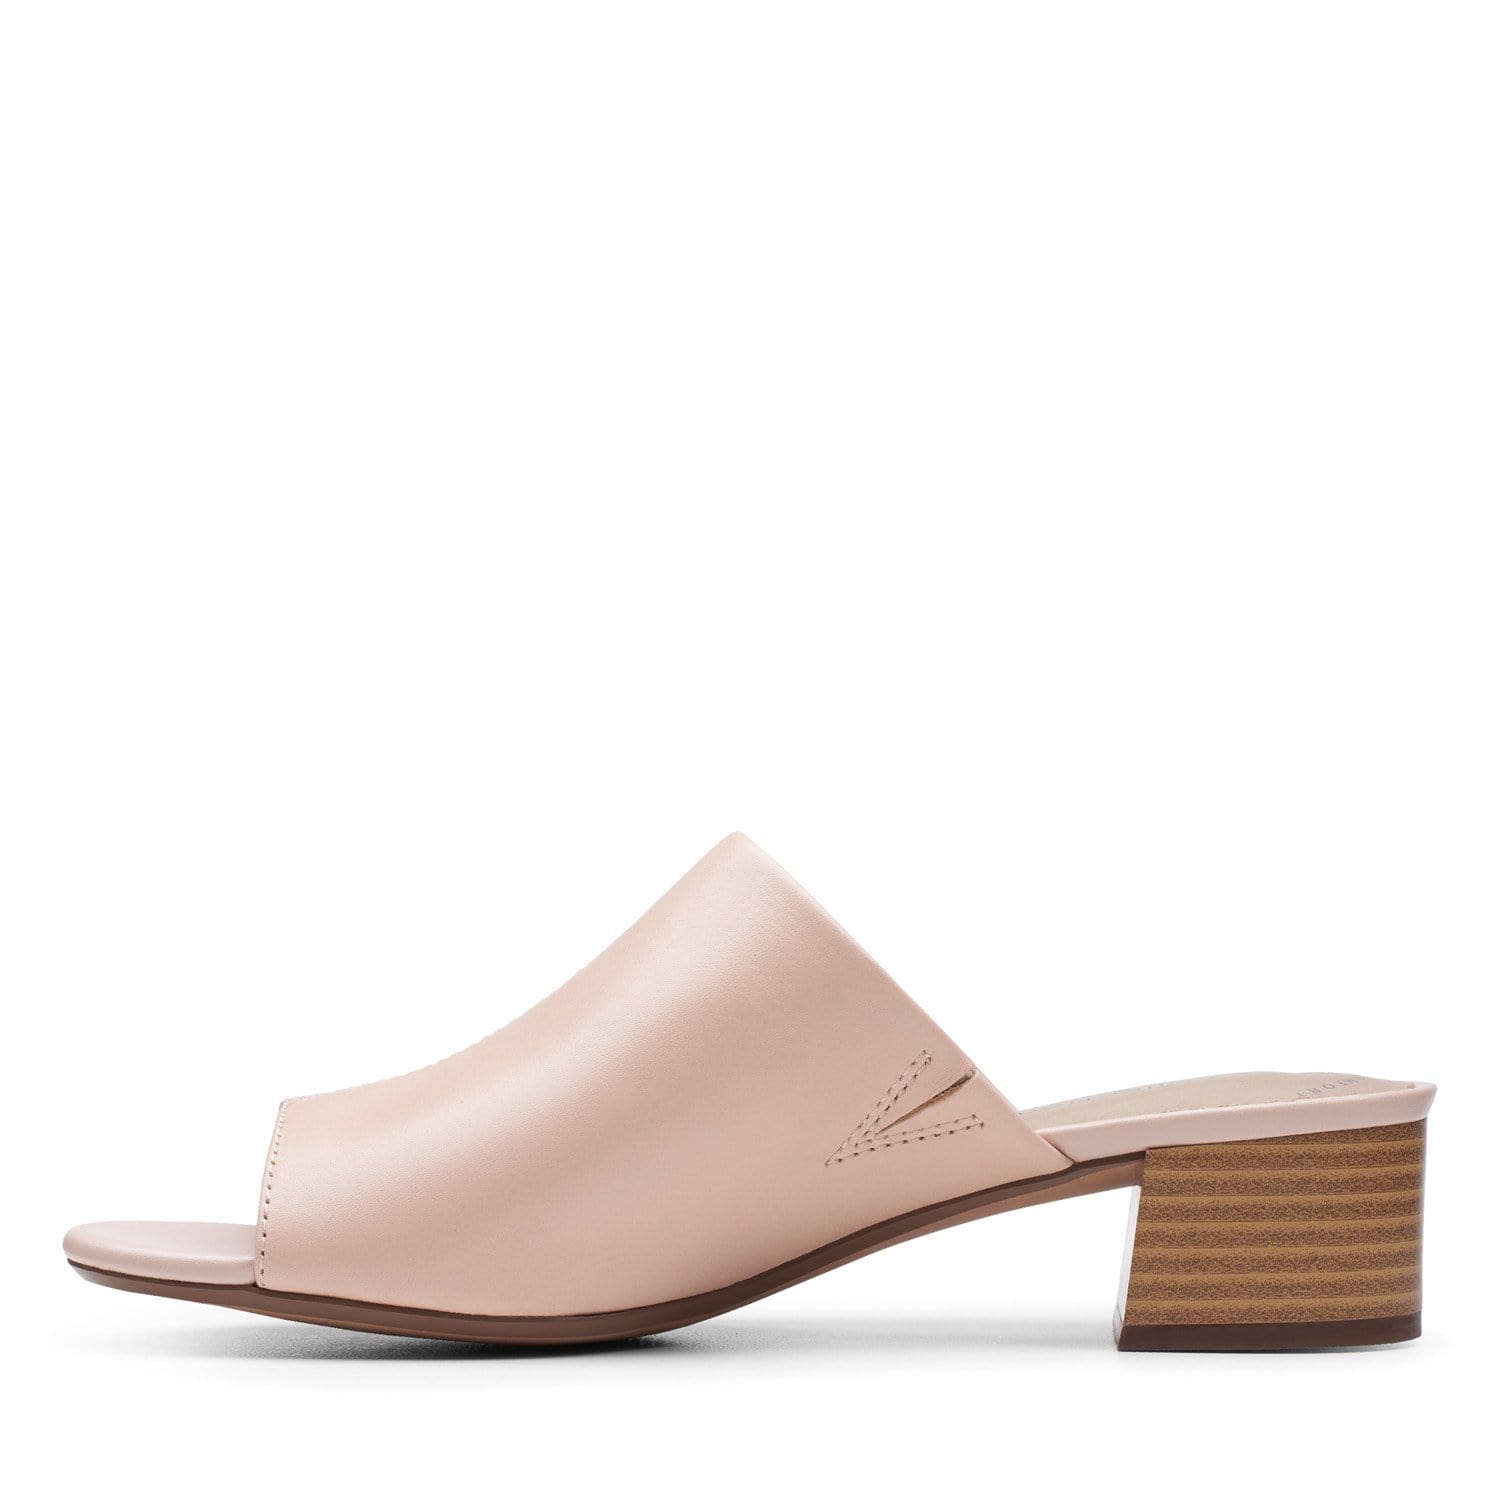 Clarks Elisa Rose - Sandals - Blush Leather - 261501134 - D Width (Standard Fit)